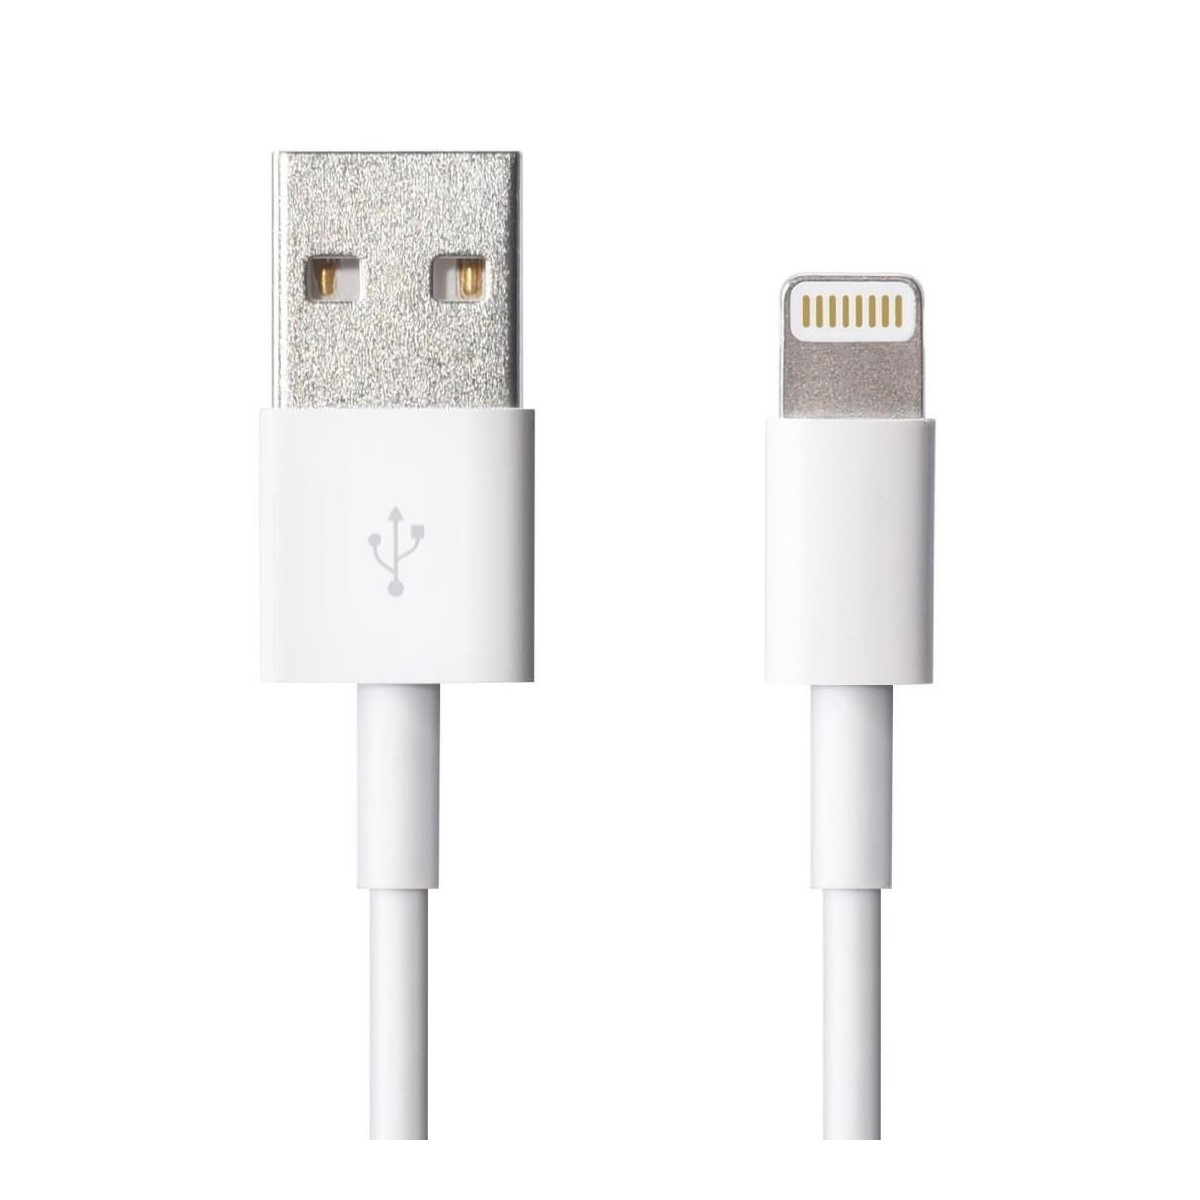 Câble USB vers Lightning Blanc 2 mètres MD819ZM/A - Apple